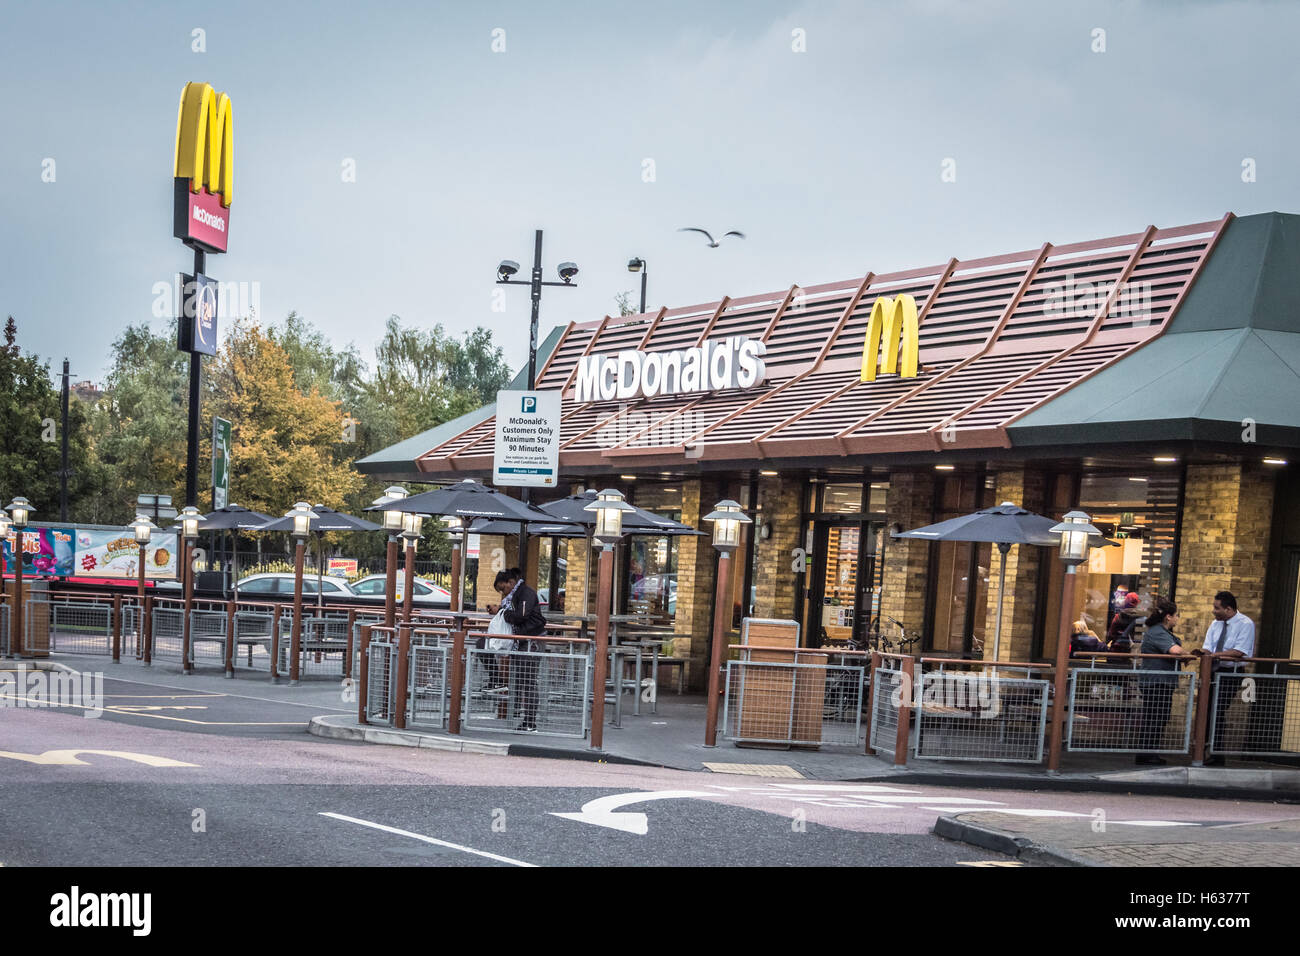 McDonald's traverse un restaurant de restauration rapide à Wandsworth, Londres, Angleterre, Royaume-Uni Banque D'Images